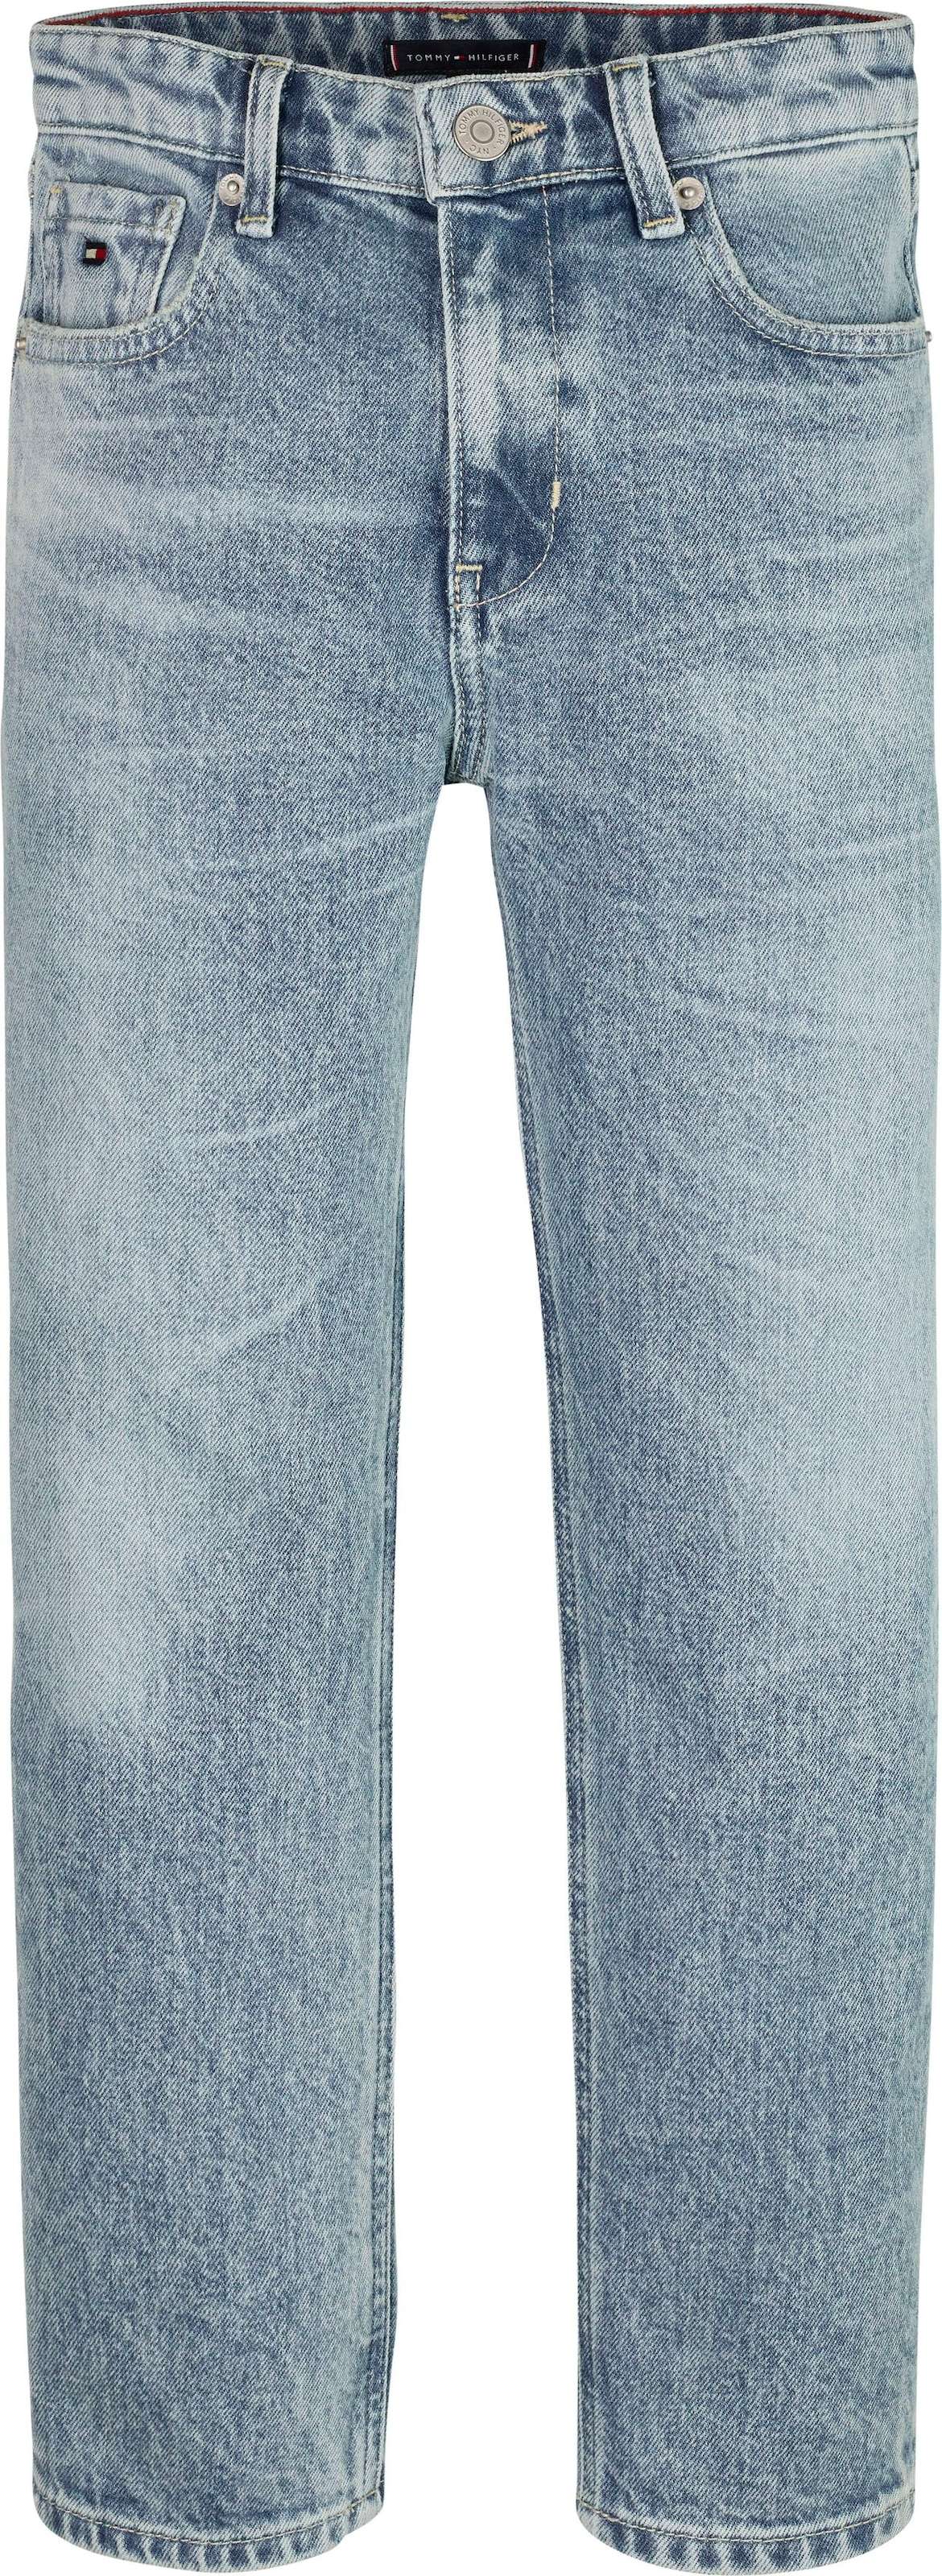 Удобные джинсы с пятью карманами.